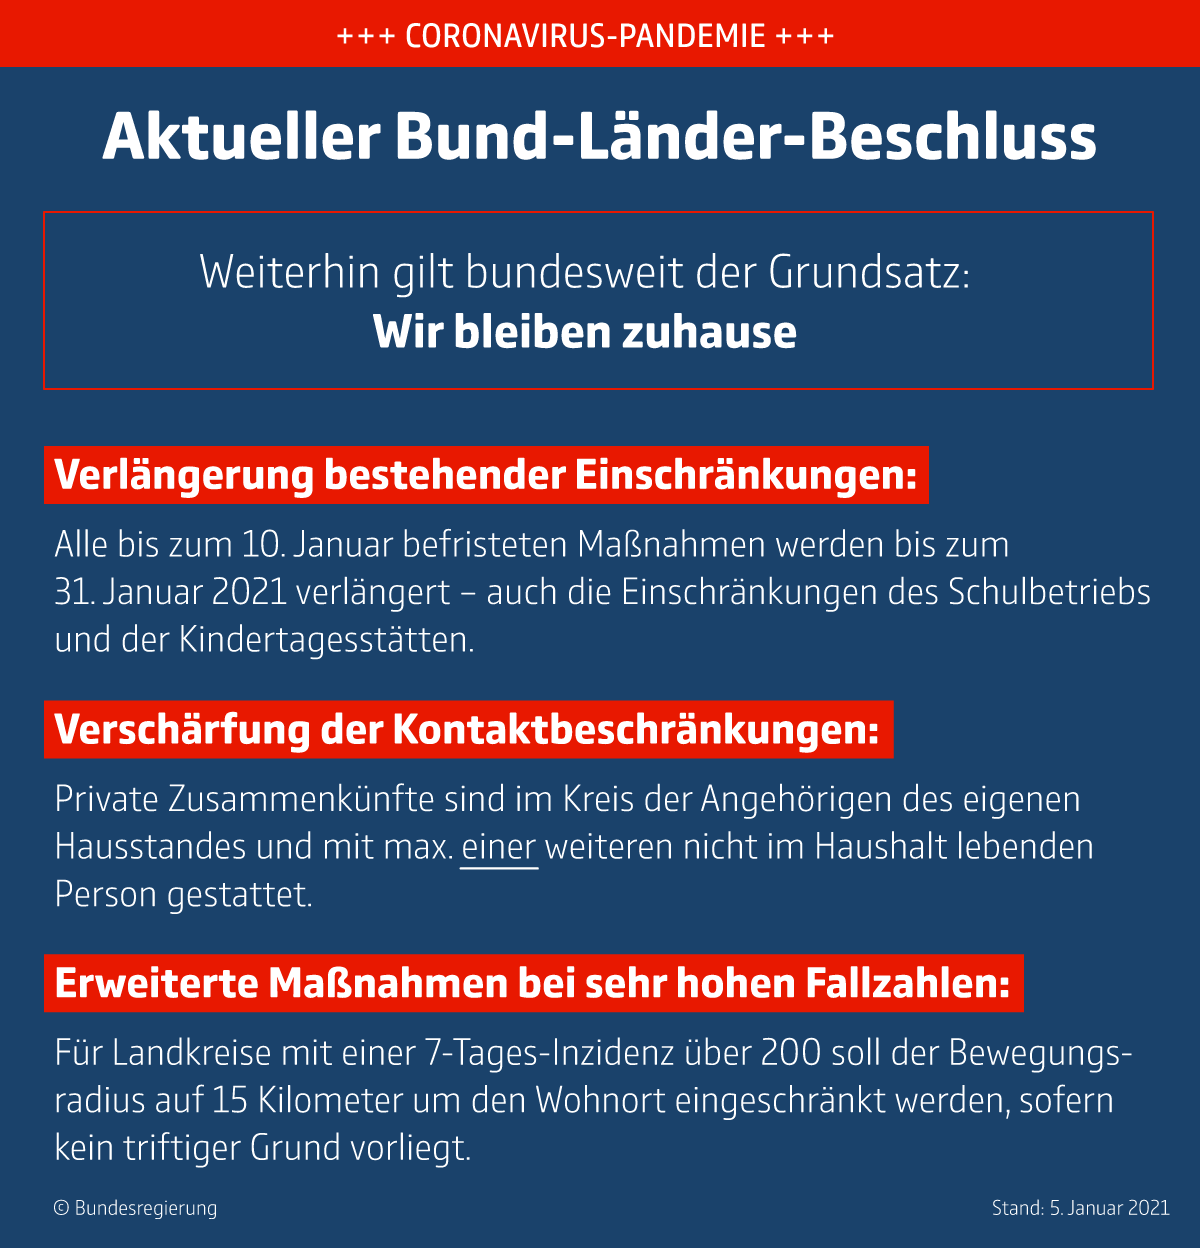 Aktueller Bund-Länder-Bechluss vom 05.01.21. Bildquelle: Bundesregierung